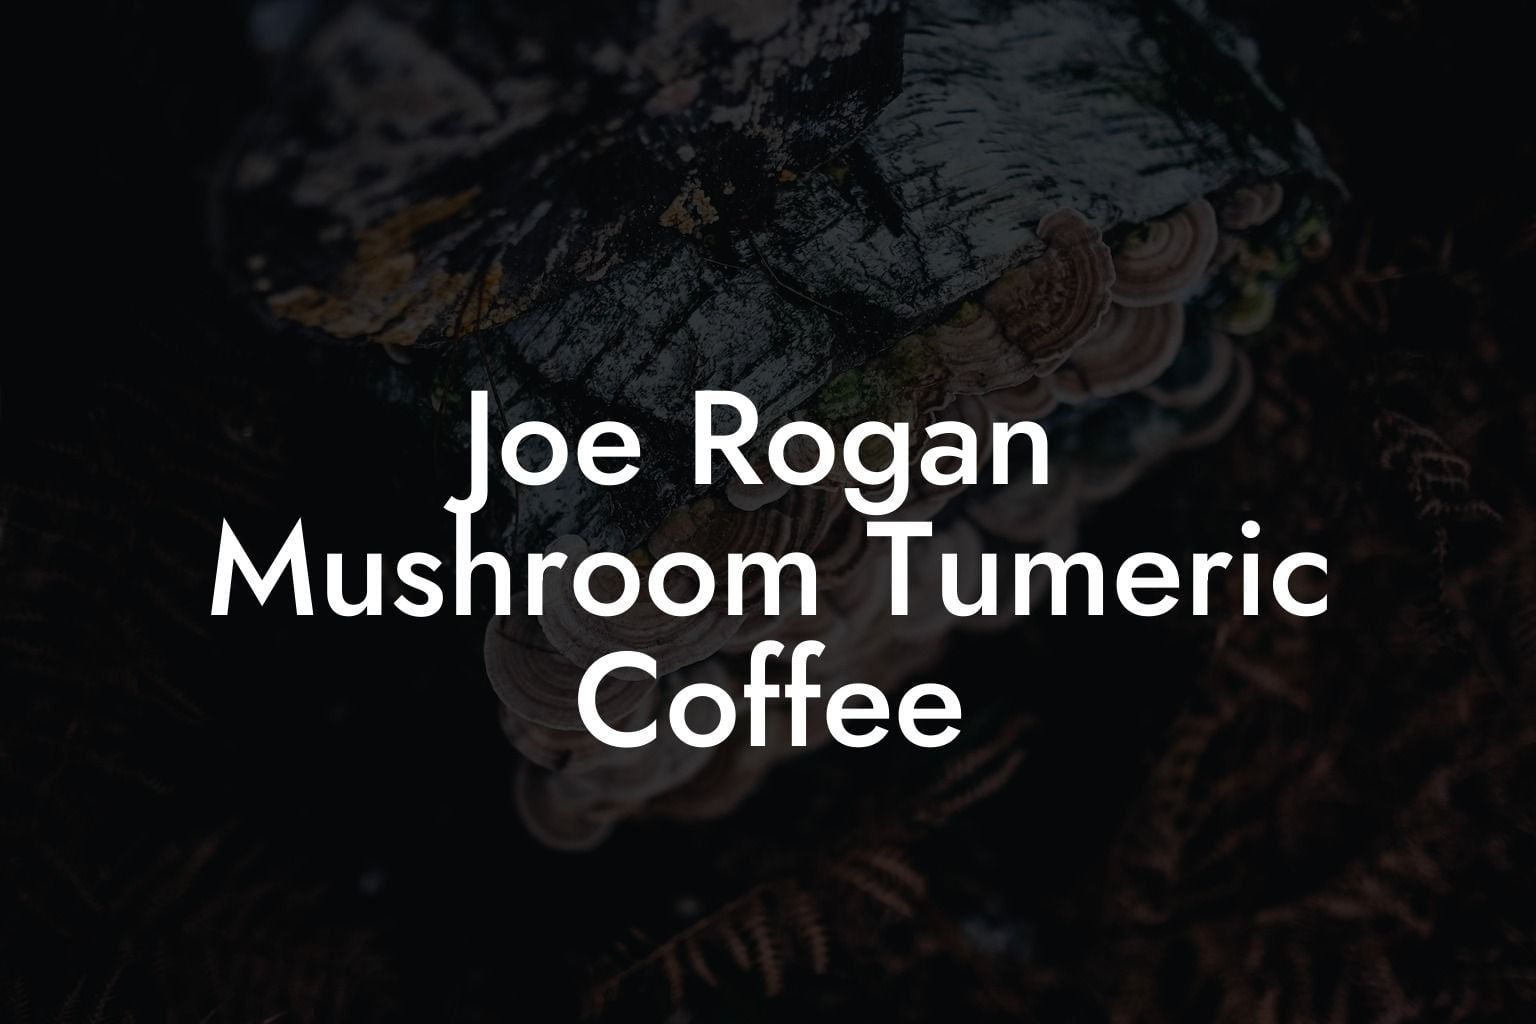 Joe Rogan Mushroom Tumeric Coffee